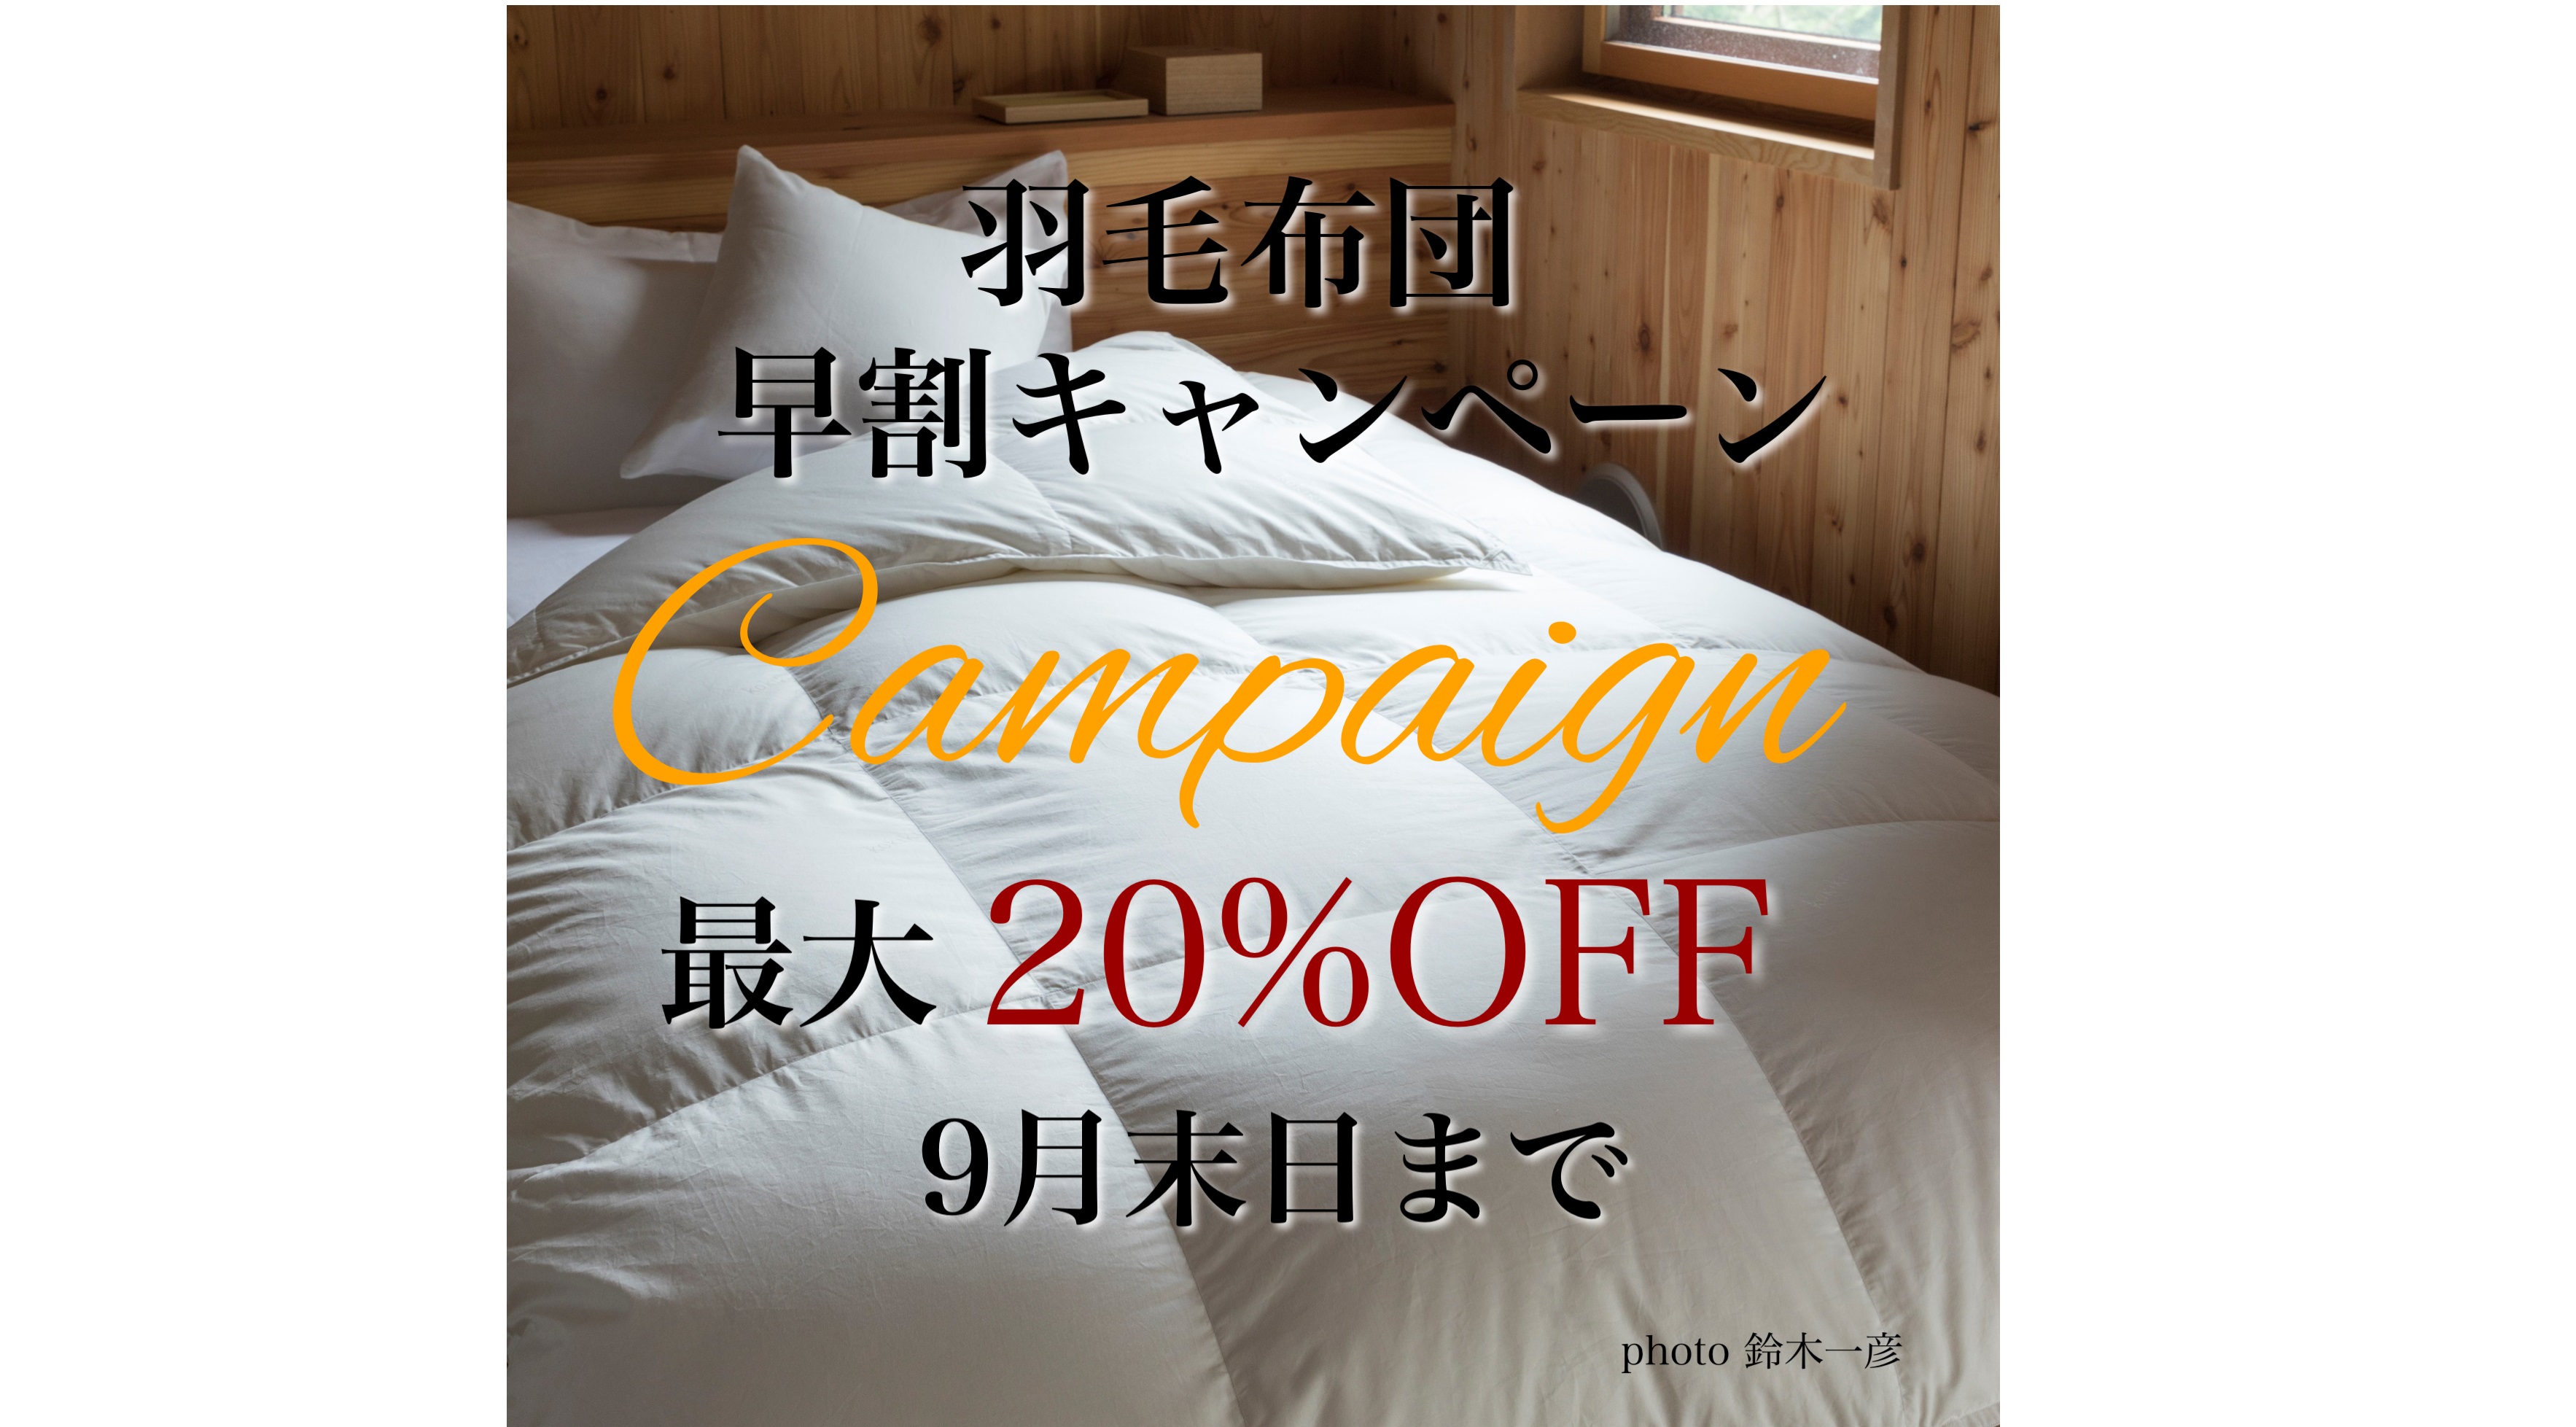 【最大20%OFF】羽毛布団の早割キャンペーン【9月末日まで】